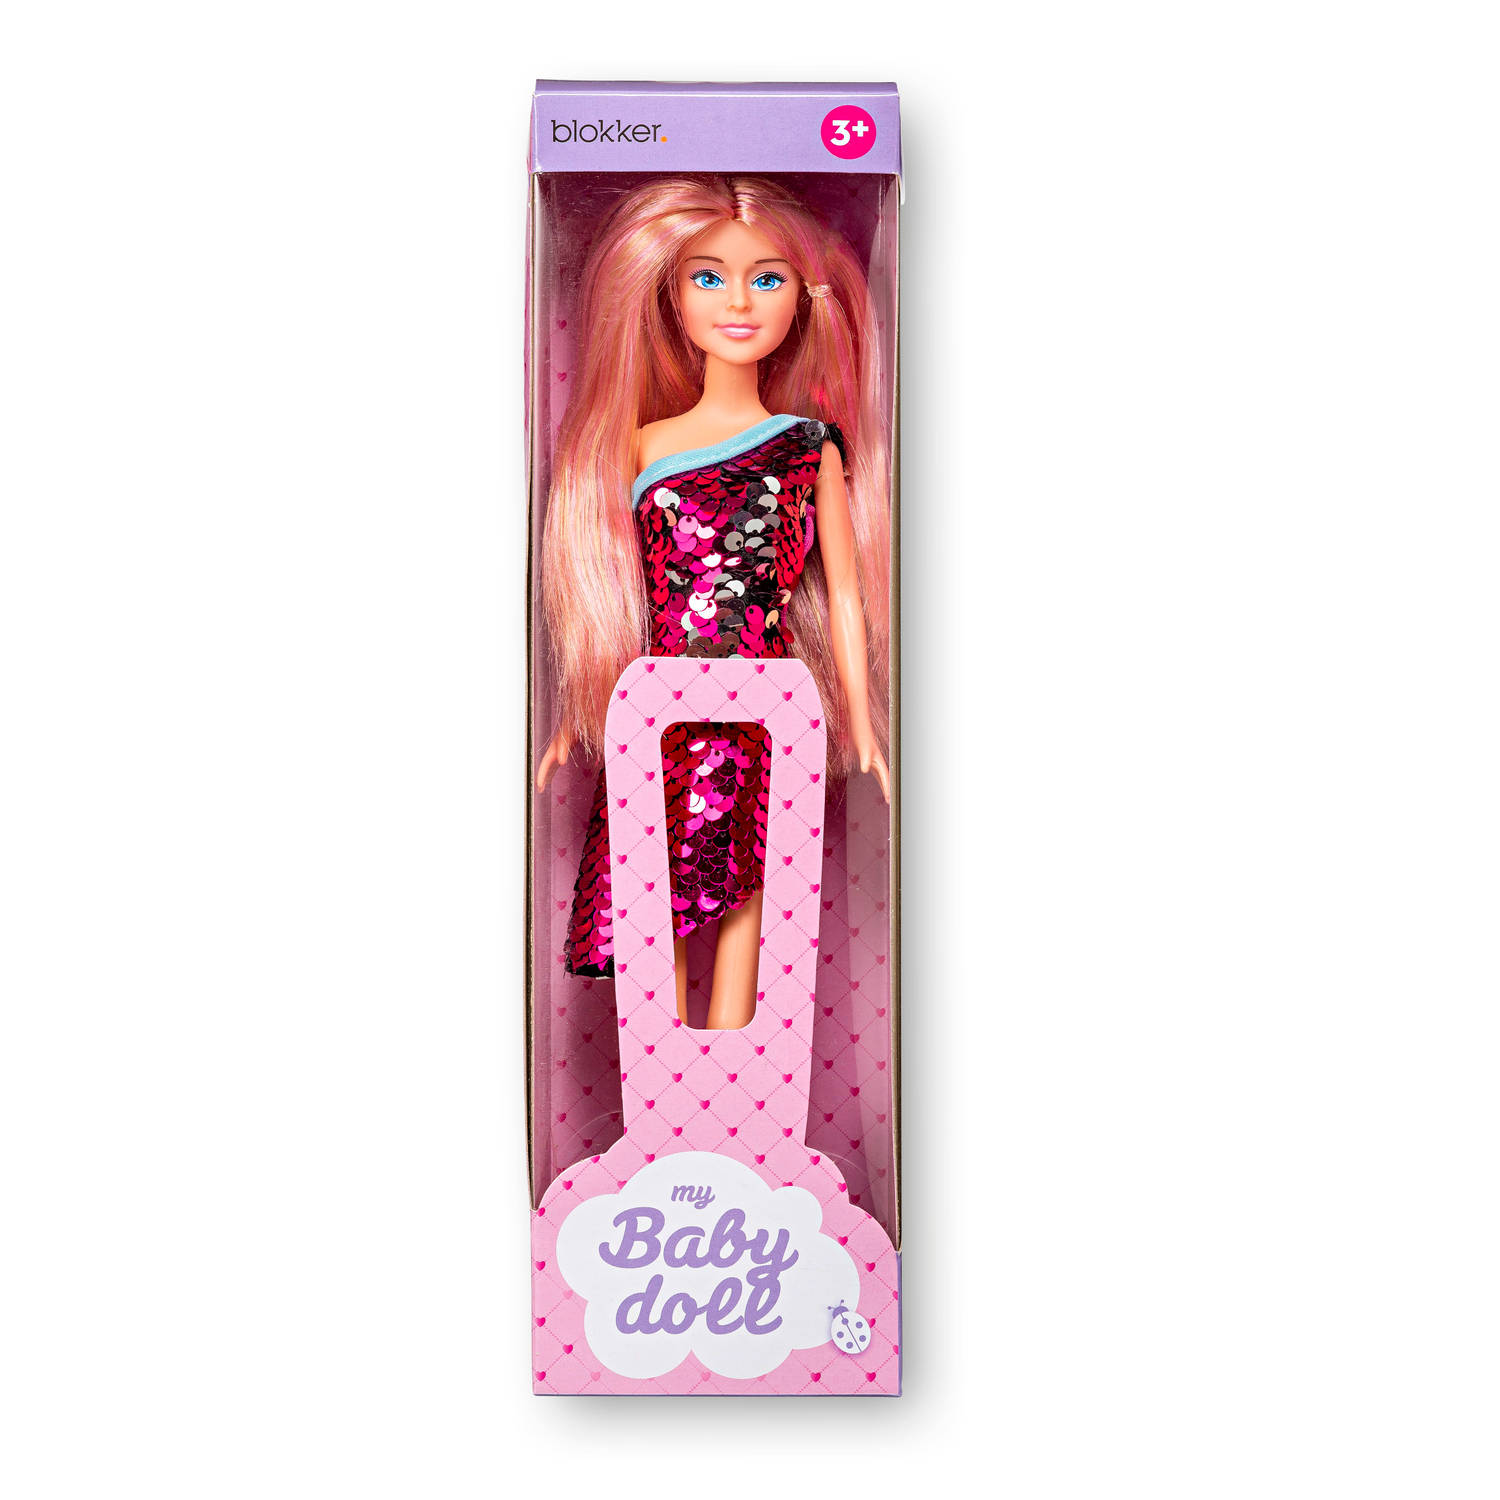 virtueel bedenken isolatie Blokker pop met pailletten jurk en roze haar | Blokker